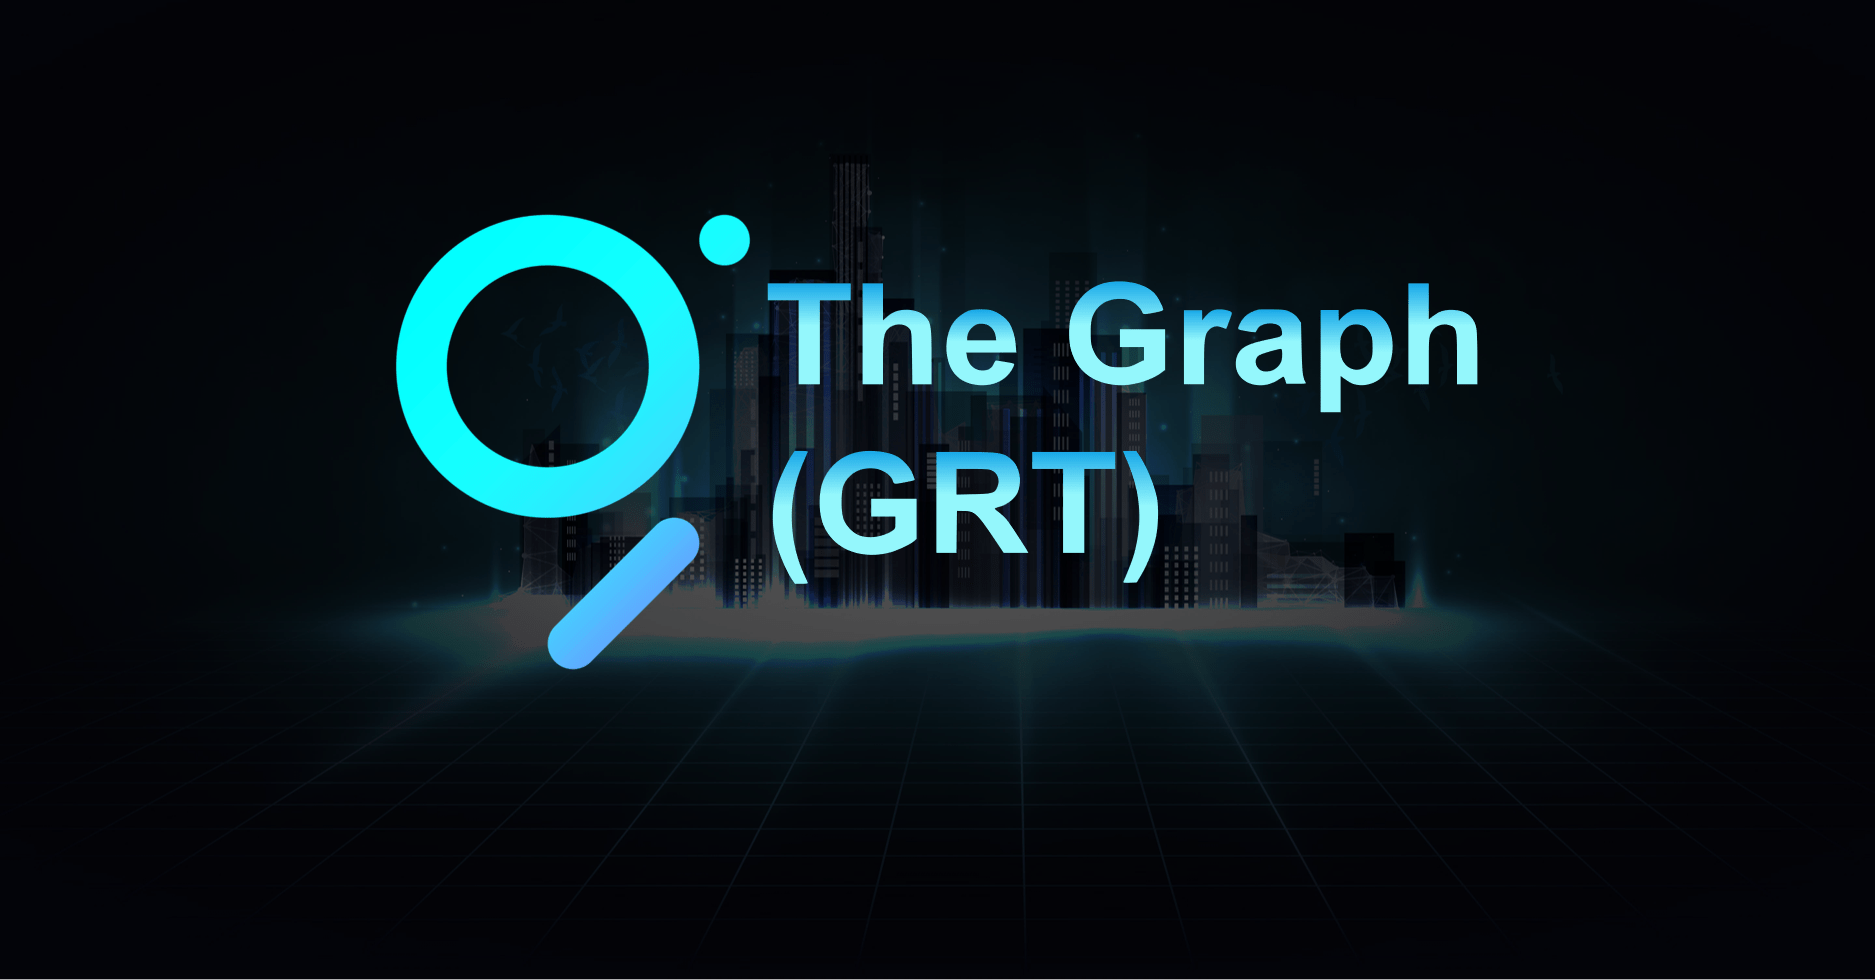 그래프 grt는 무엇입니까